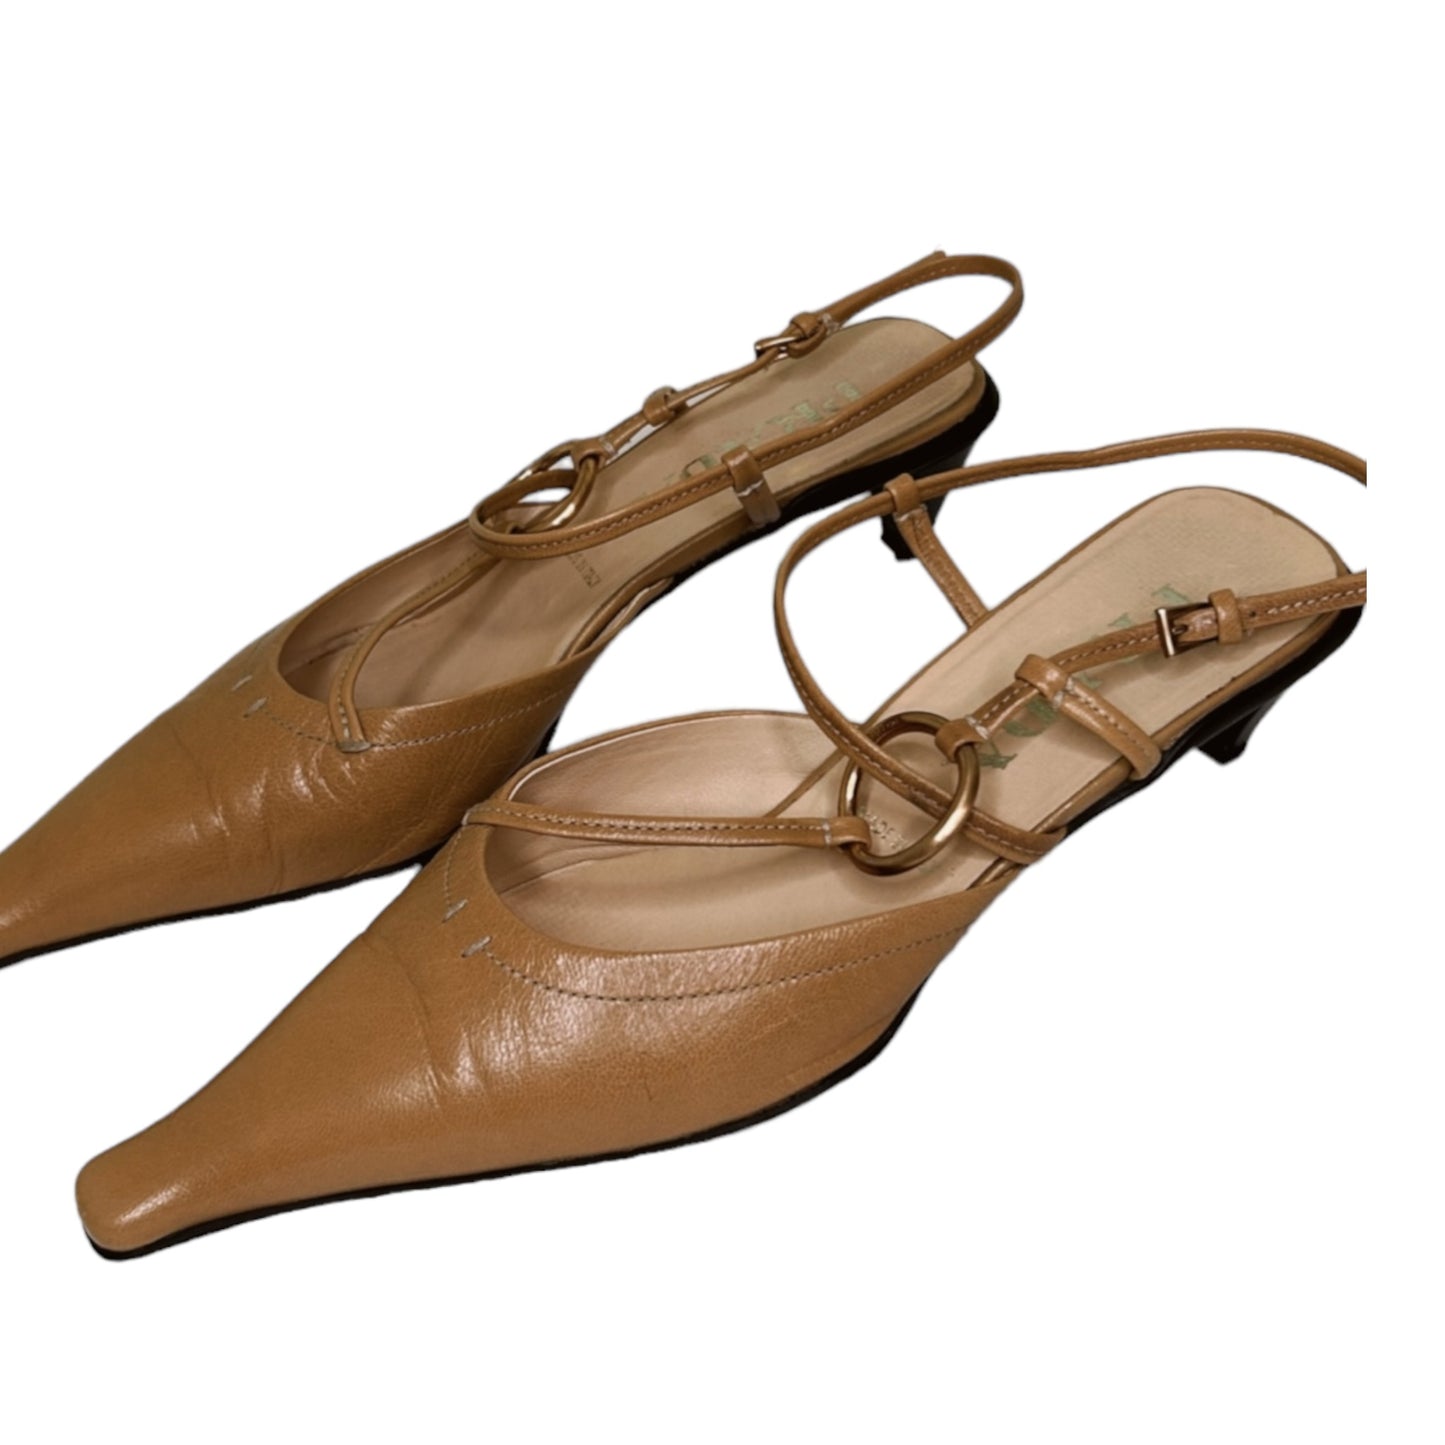 Vintage Prada sling back heels